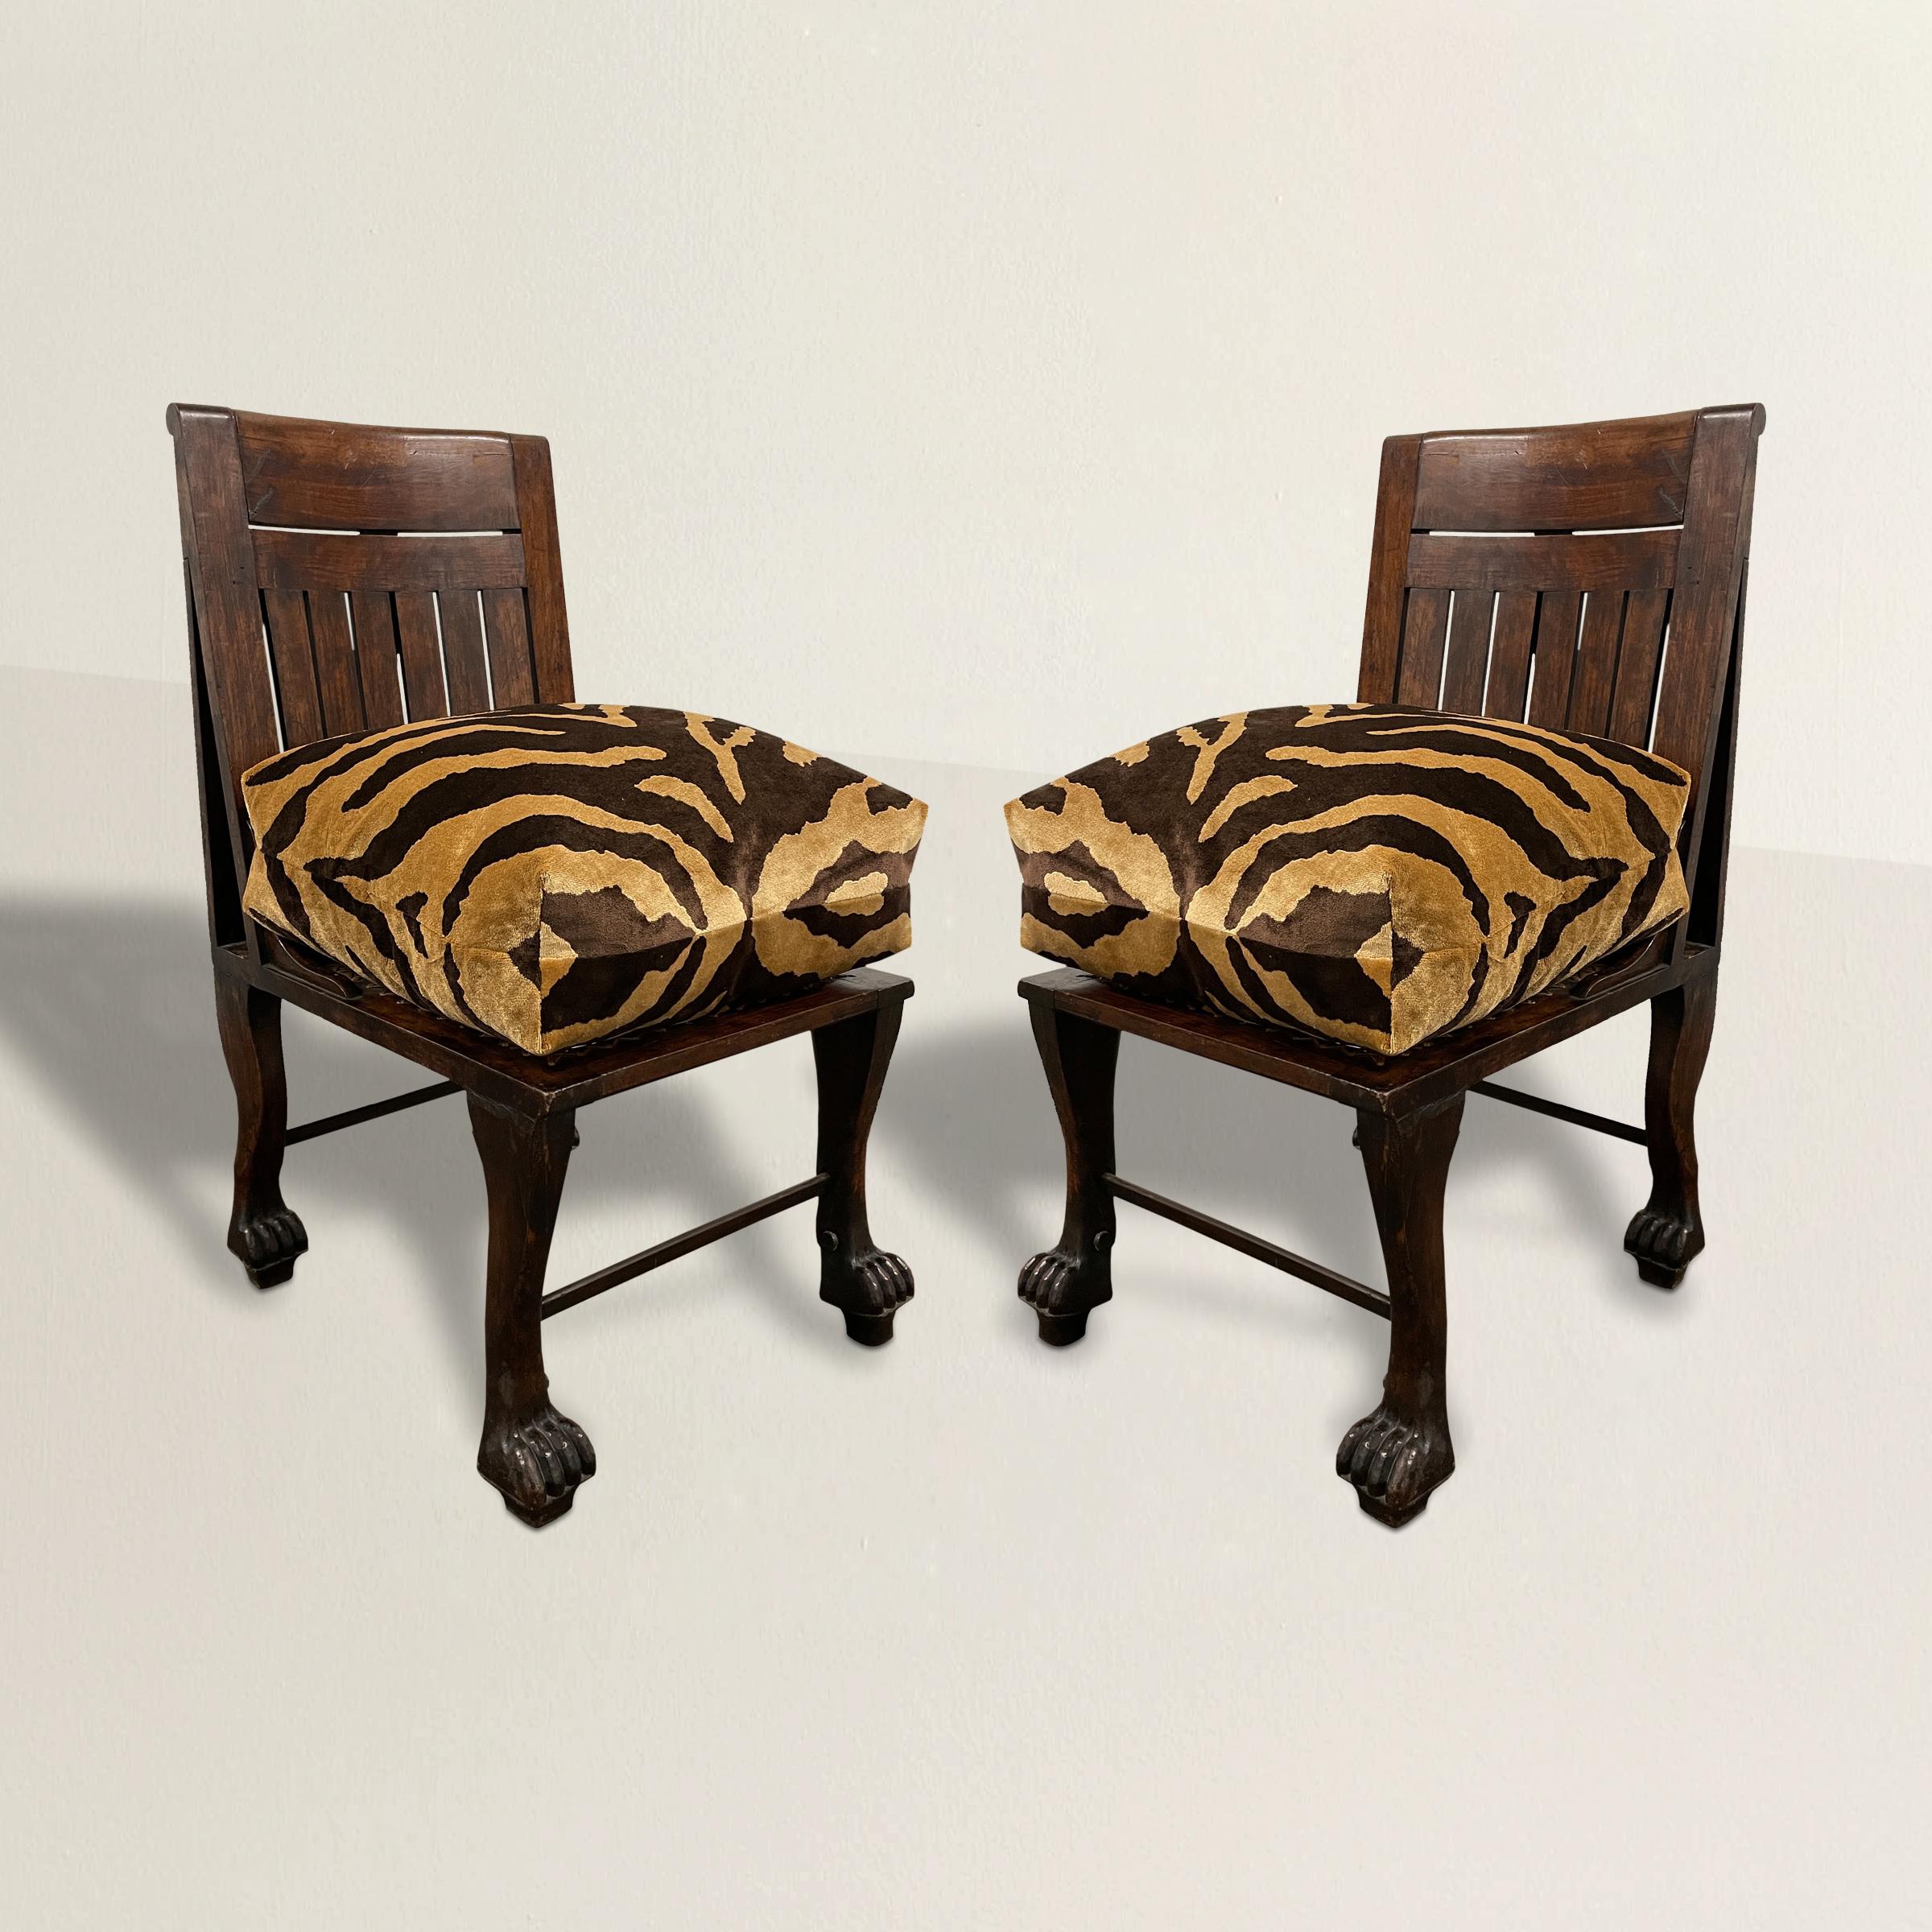 Une paire incroyablement rare de chaises pantoufles de style néo-égyptien anglais du début du 20e siècle, inspirée d'une chaise égyptienne de la 18e dynastie découverte en 1905. Les cadres sont sculptés en noyer et présentent des pieds sculptés pour